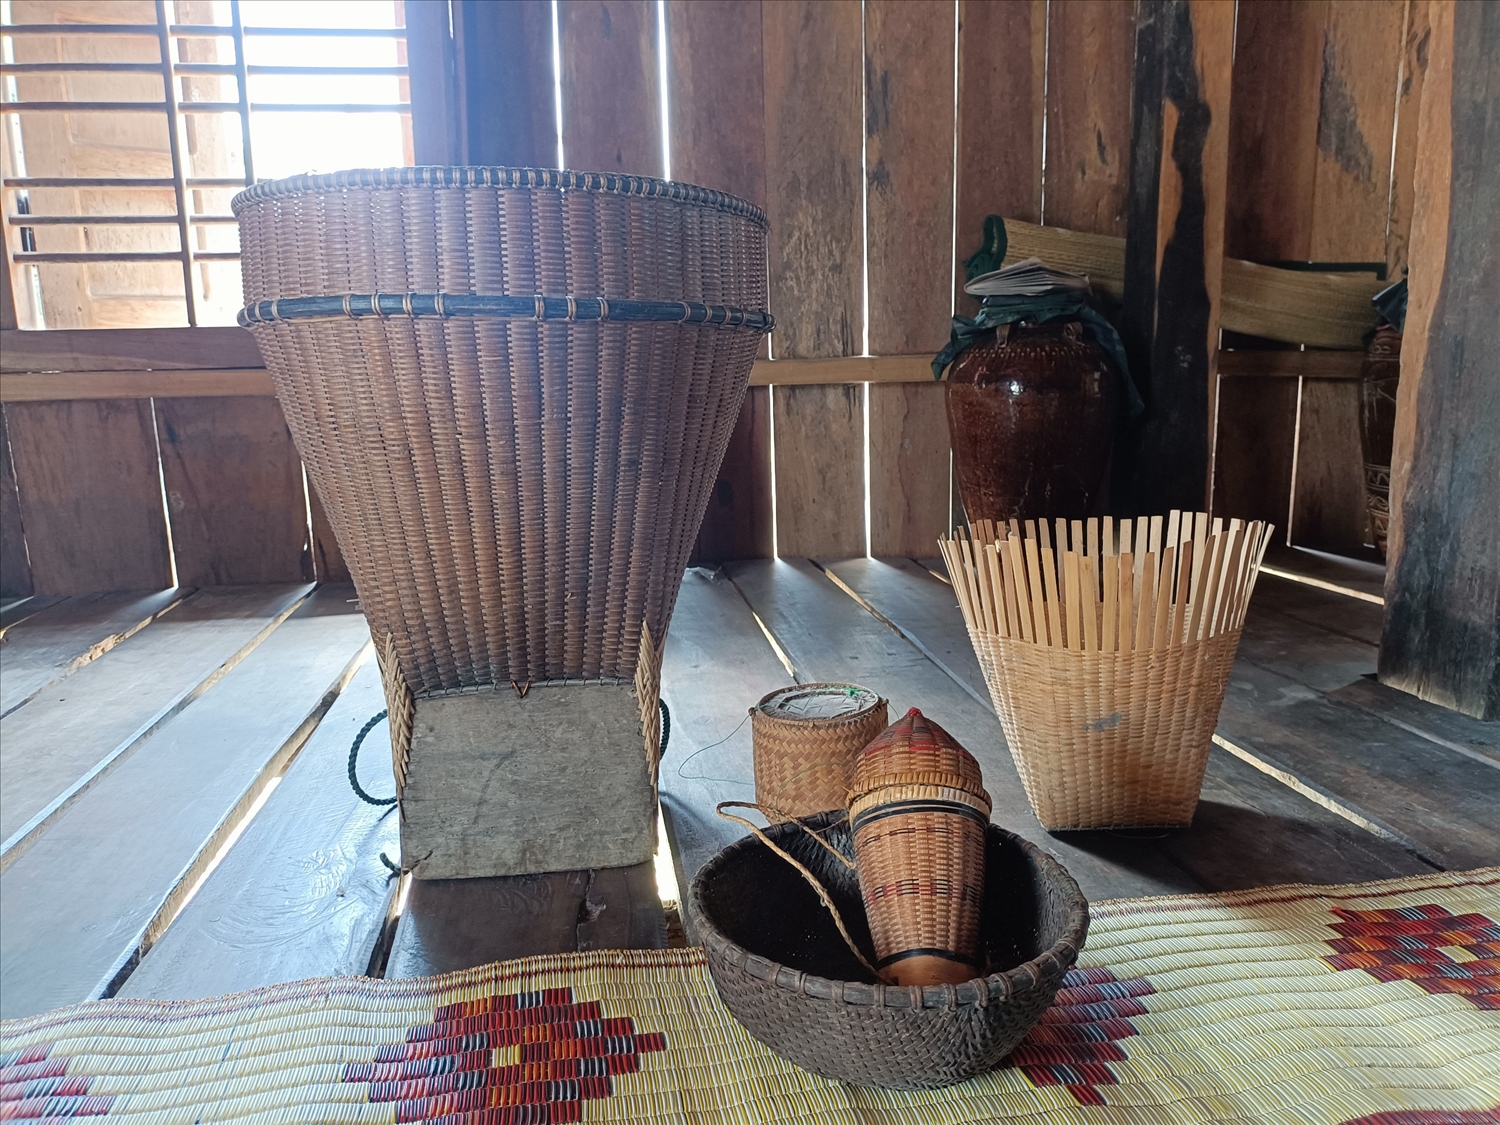 Những sản phẩm đặc trưng của nghề đan lát ở Suối Trai